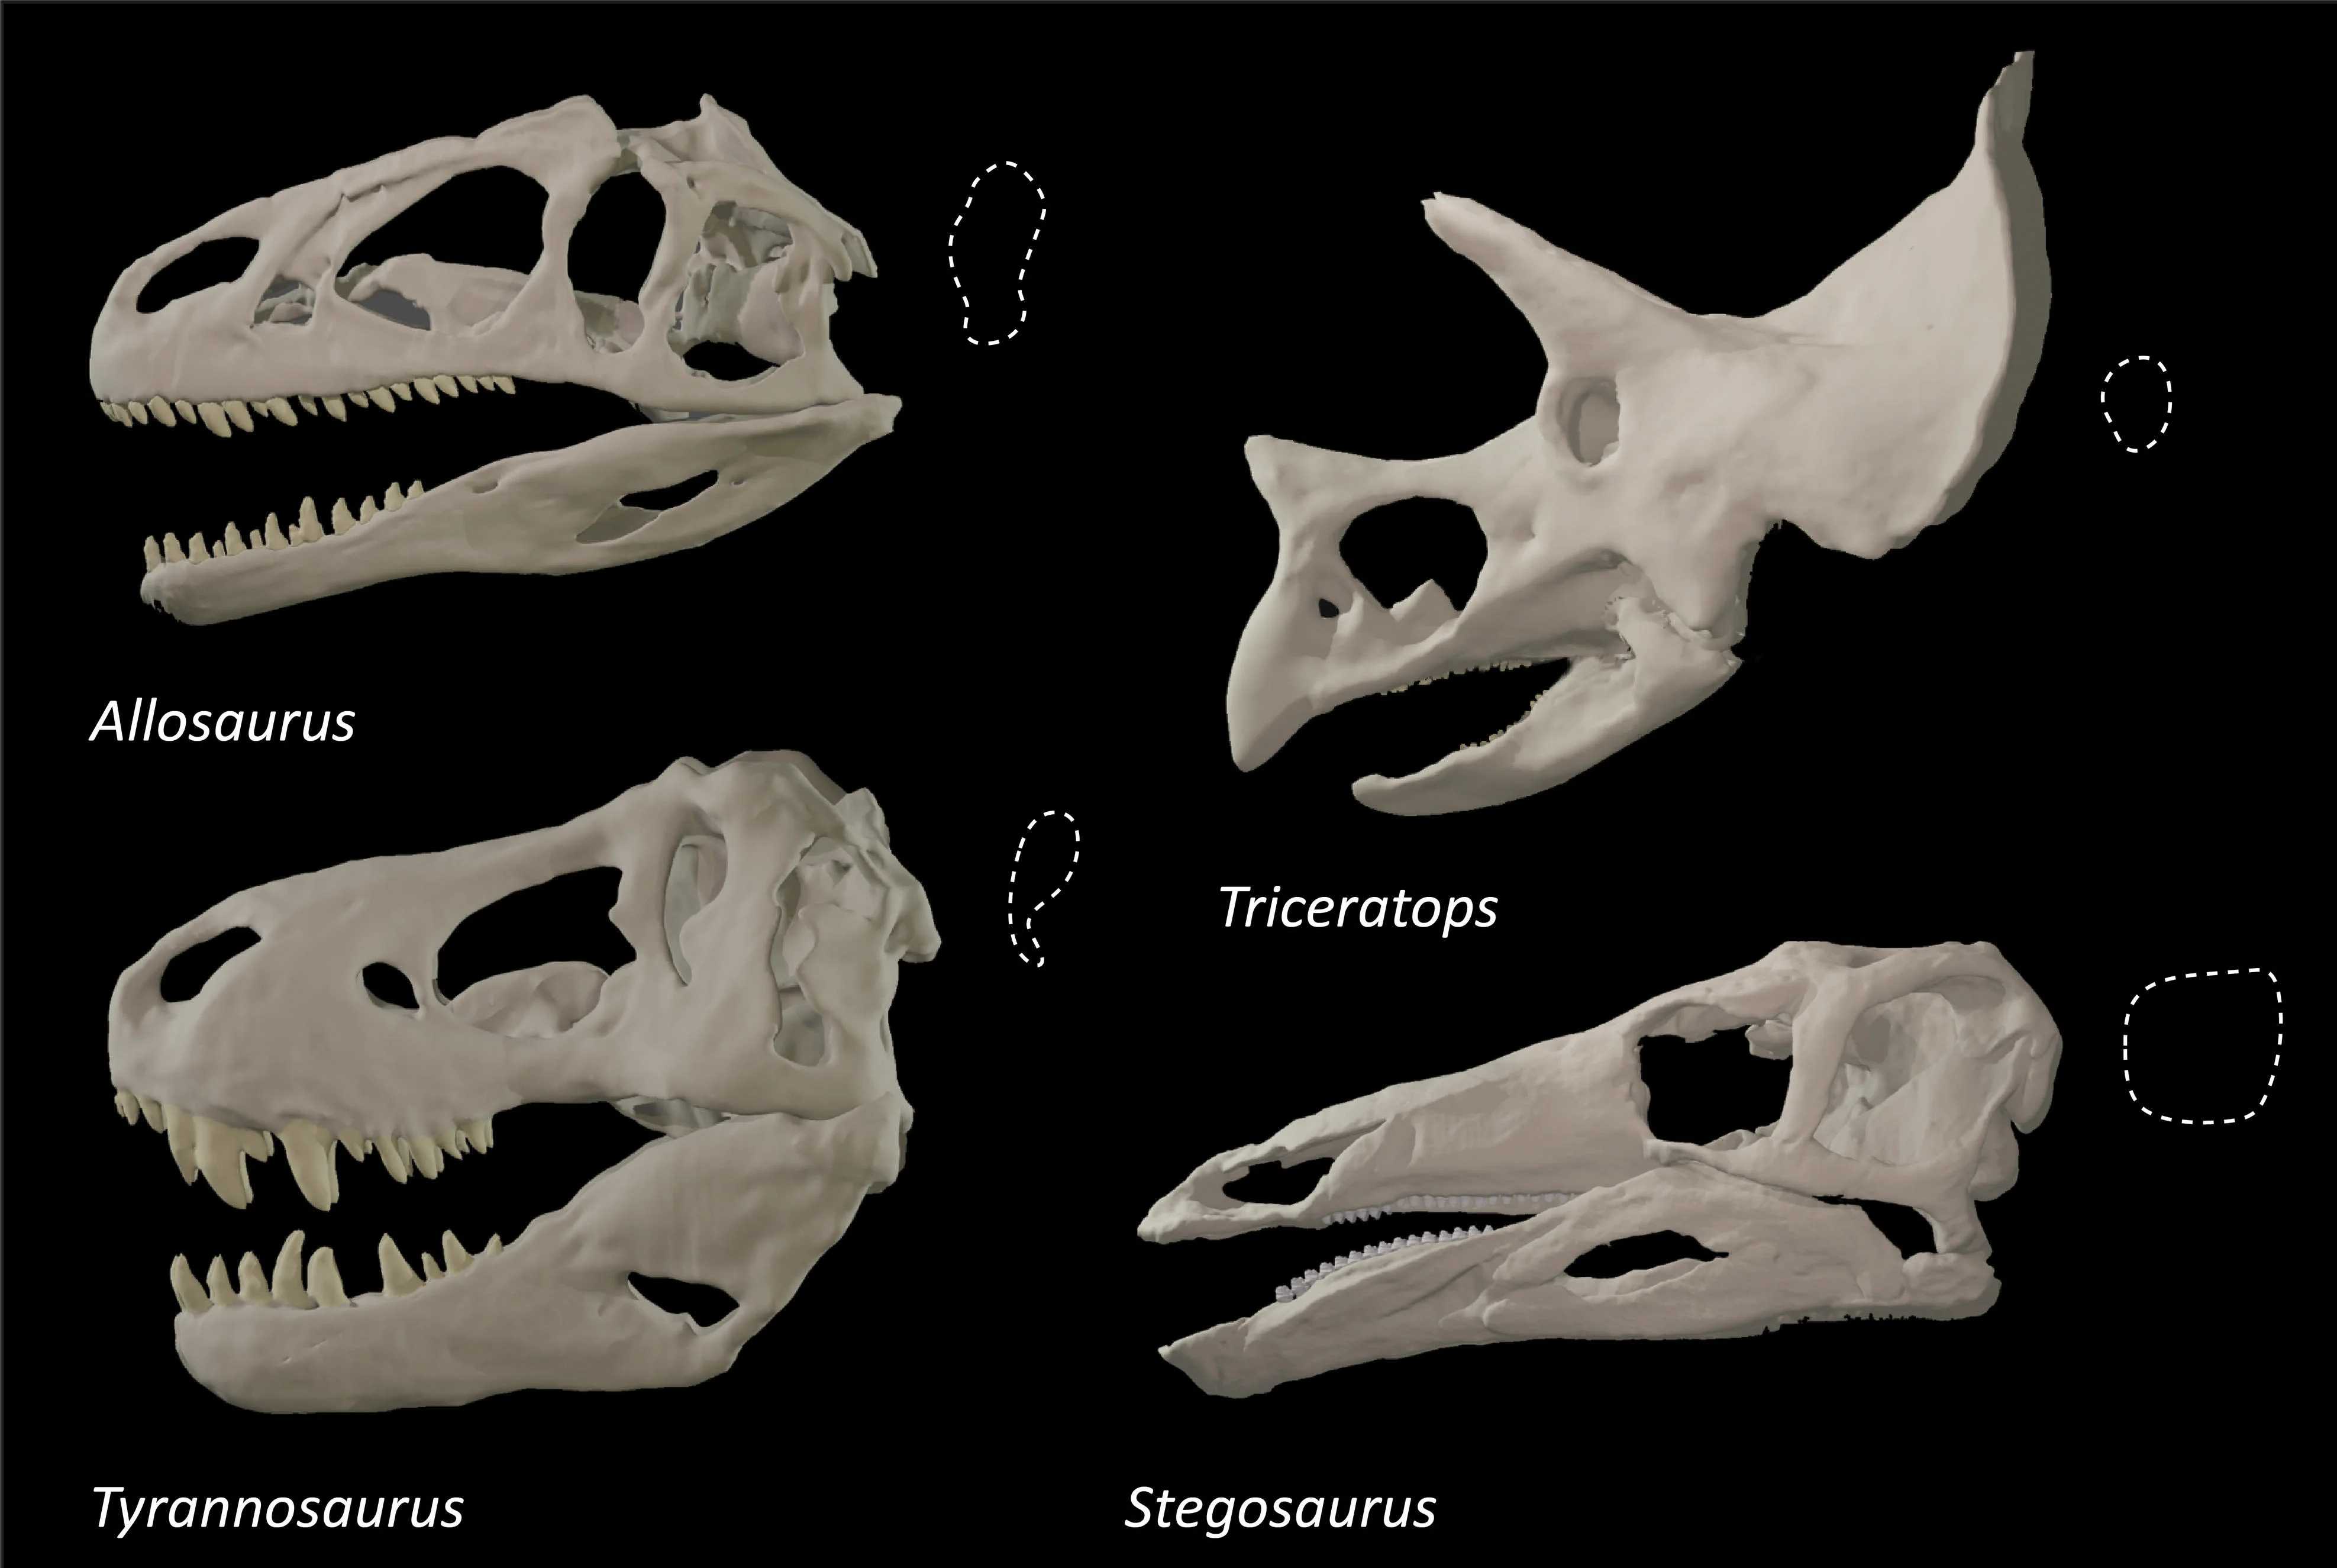 Форма глазниц хищных динозавров изменялась ради повышения эффективности укуса